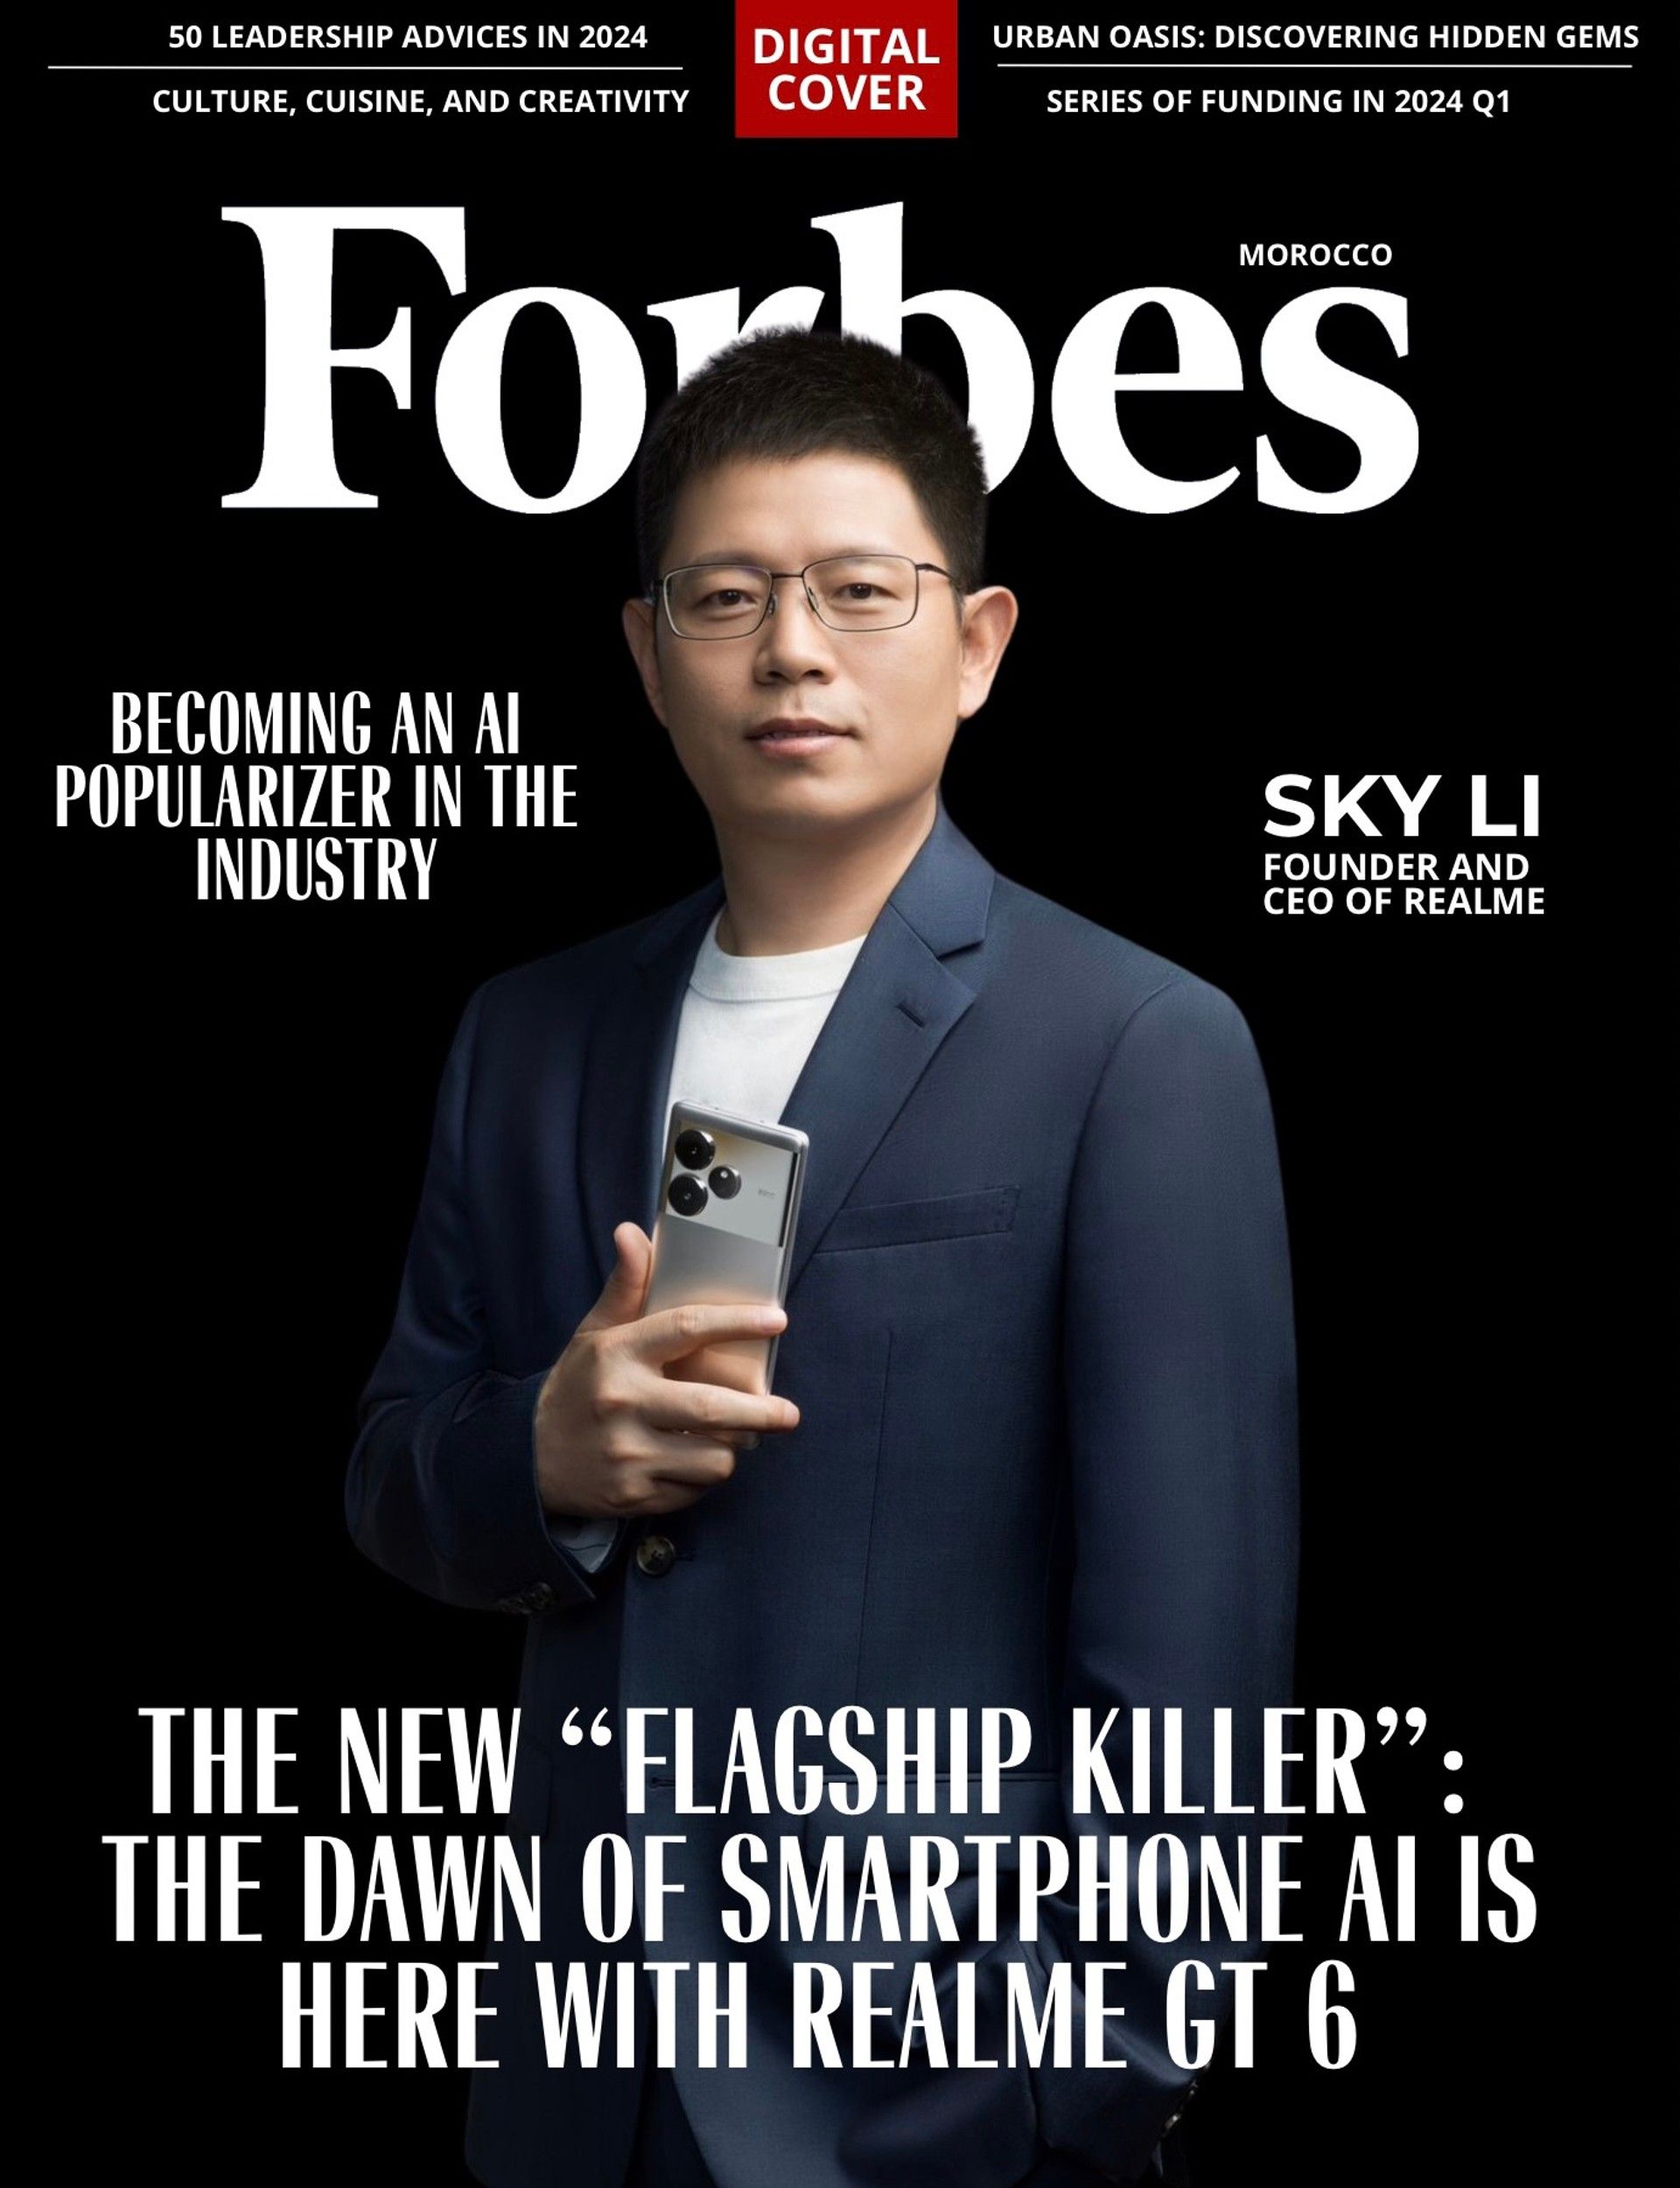 Sky Li, Pendiri dan CEO Realme, umumkan kembalinya Realme GT Series